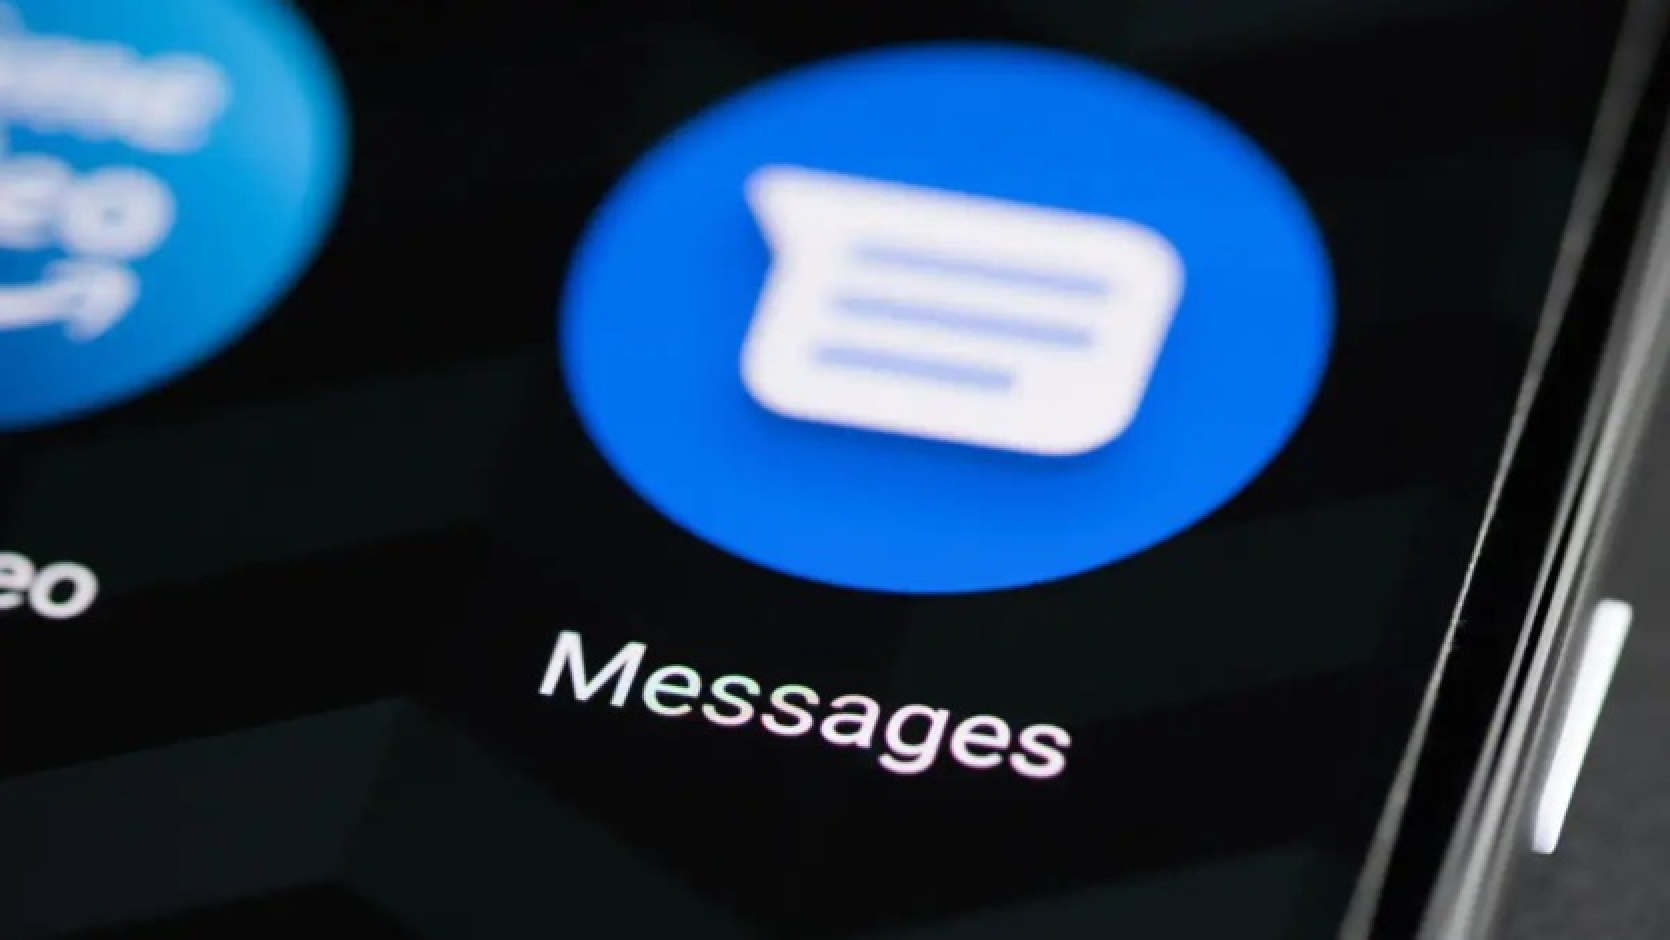 Daži Google Messages lietotāji Android operētājsistēmā saņem izkropļotus GIF failus, kas nosūtīti no iPhone